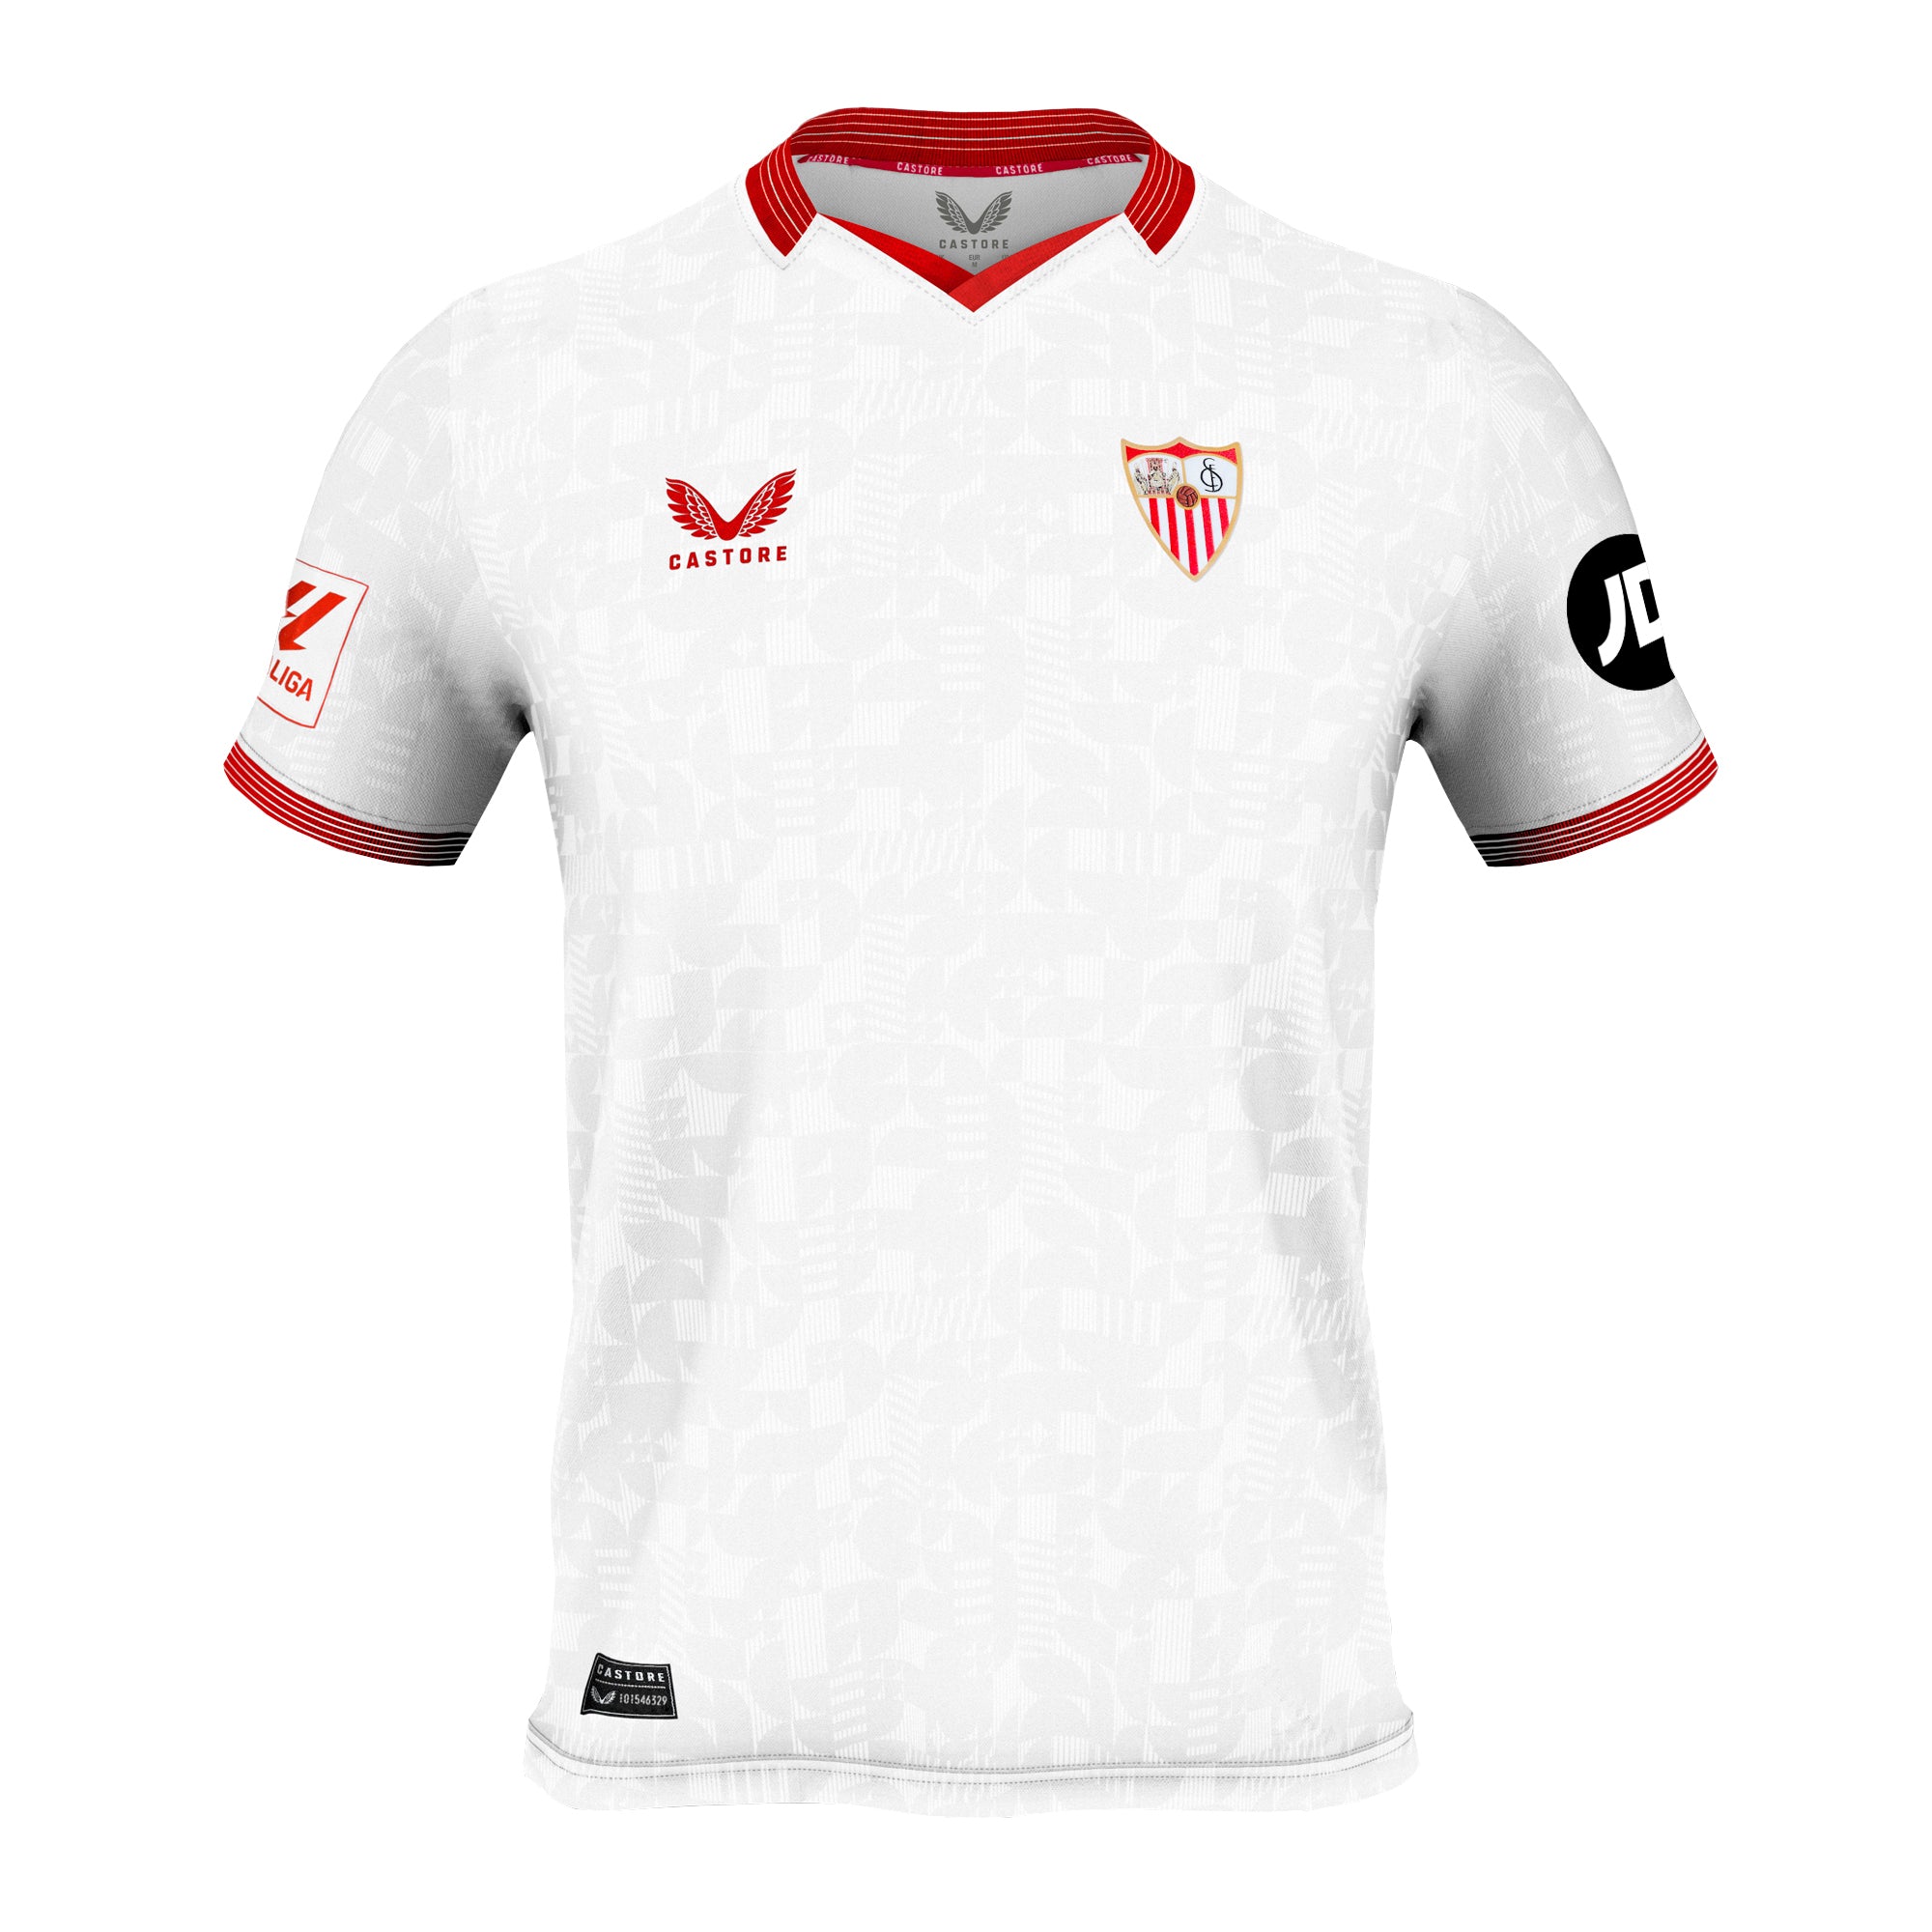 Camiseta oficial Deportivo de la Coruña 3ª equipación 23/24 adulto